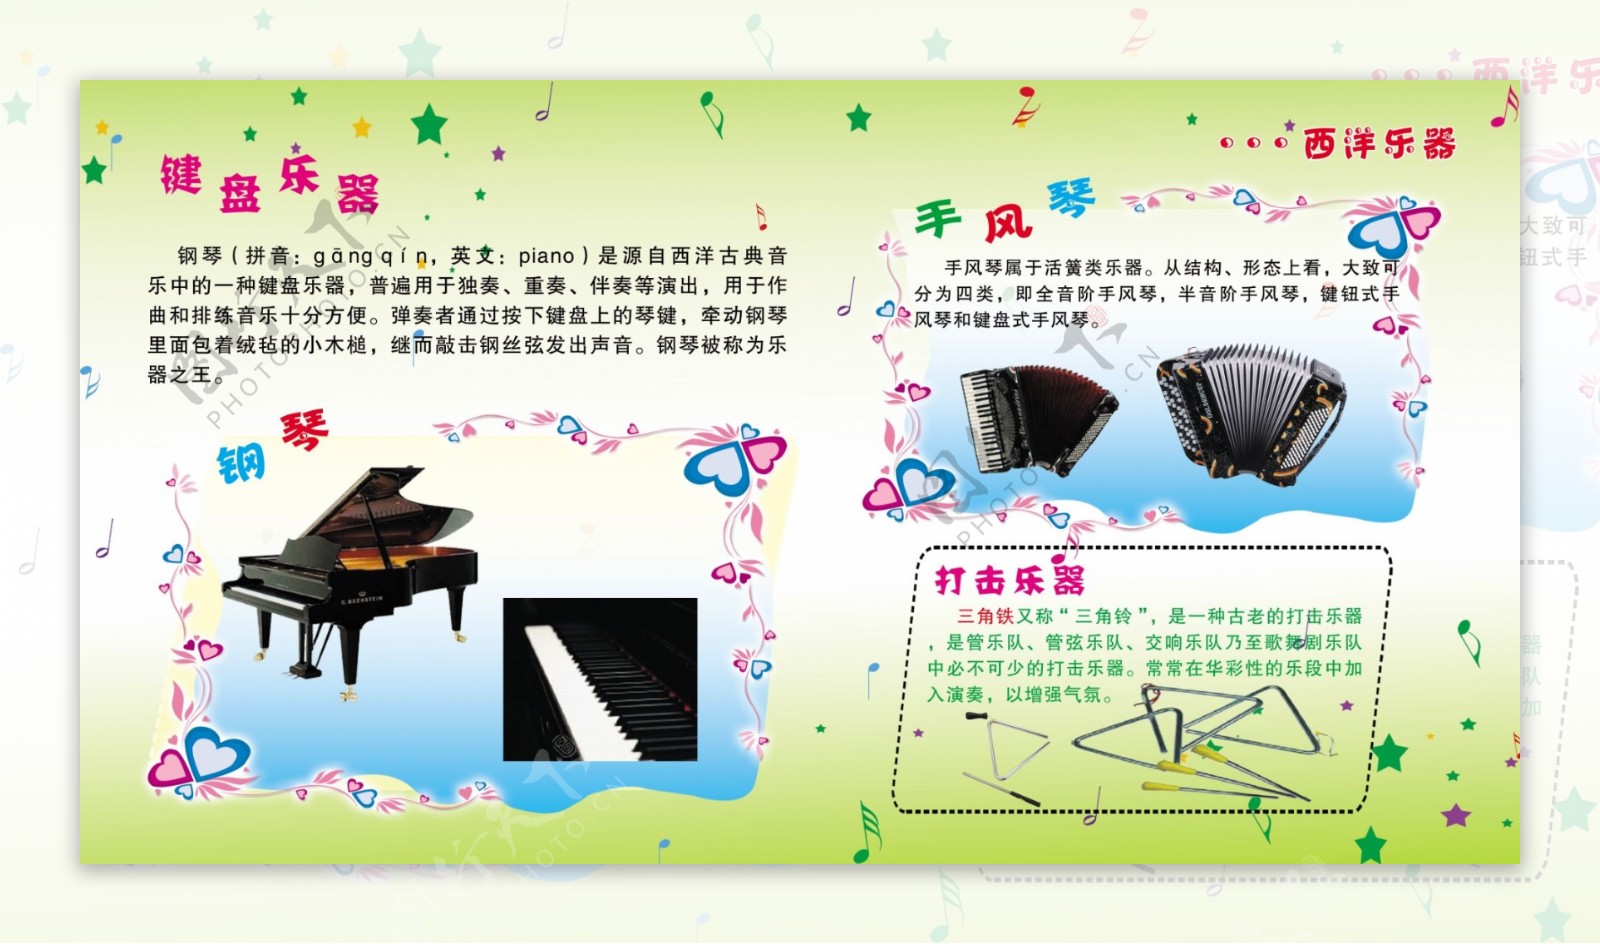 钢琴手风琴展板图片